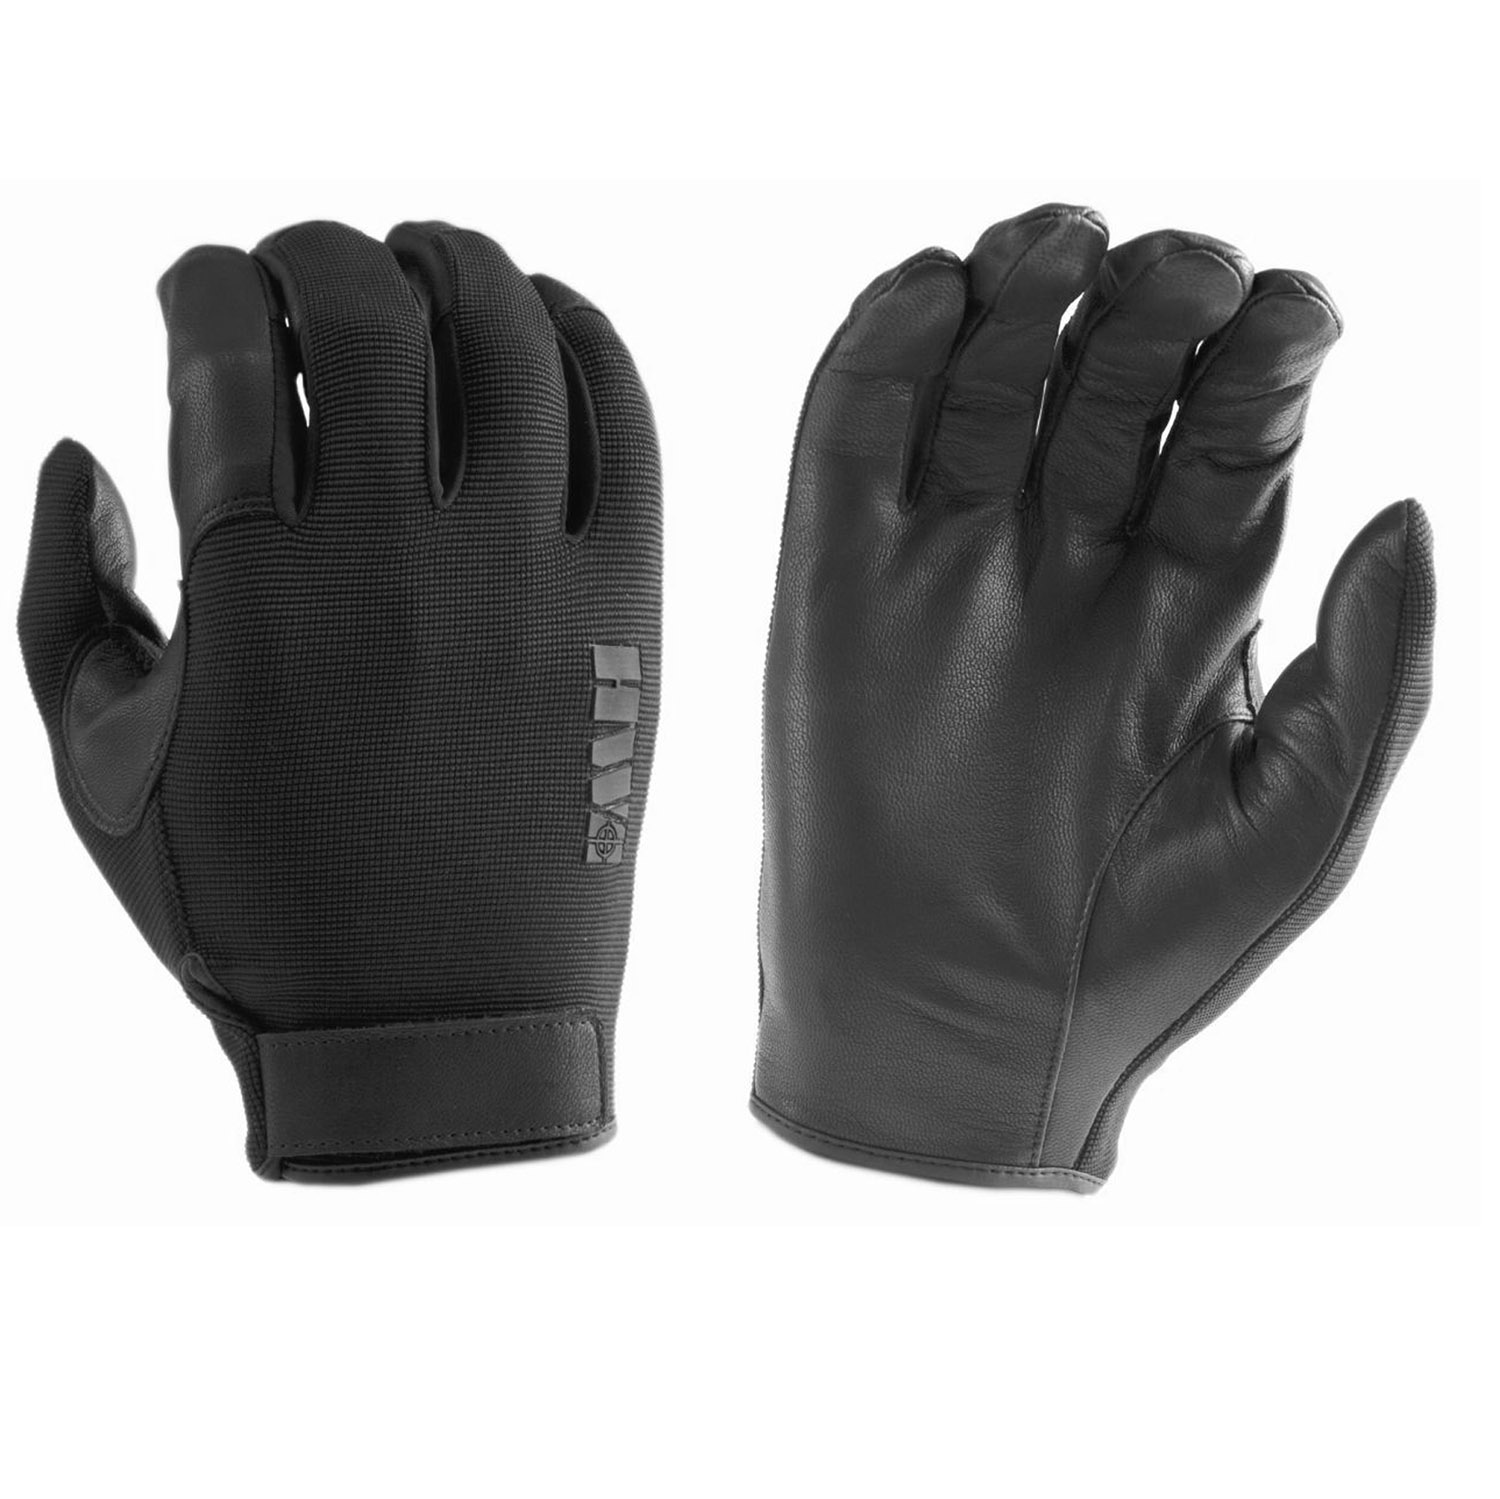 HWI Gear Unlined Duty Gloves